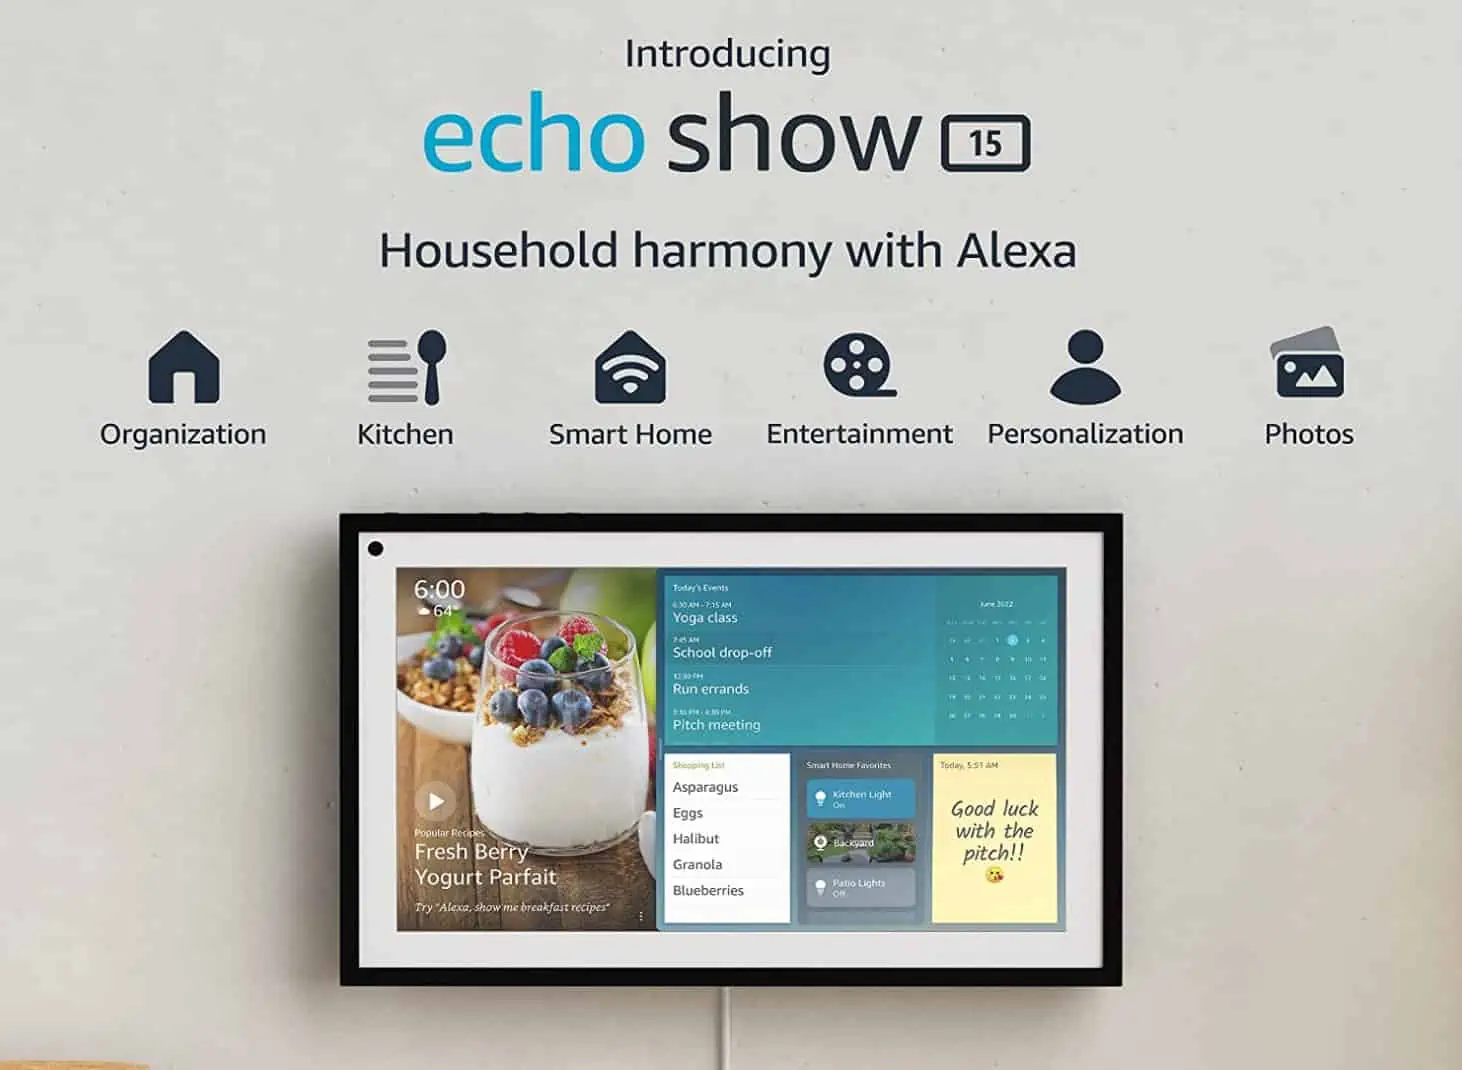 Amazon najavljuje Echo Show 15, 15-inčni pametni zaslon koji pokreće Alexa